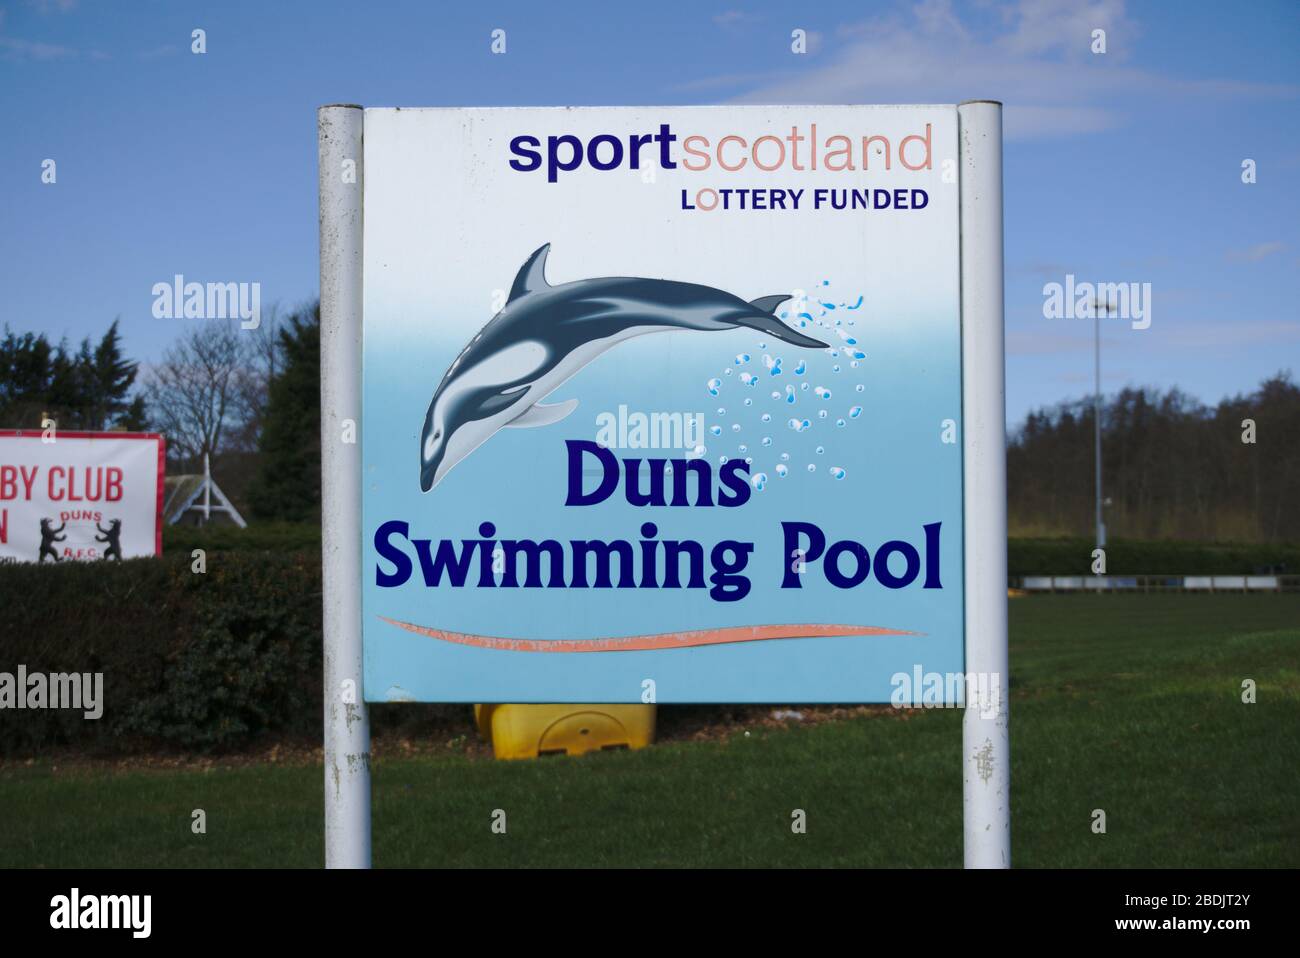 Panneau de financement de loterie Sport Scotland à l'extérieur de la piscine Duns, Berwickshire, Scottish Borders, Royaume-Uni Banque D'Images